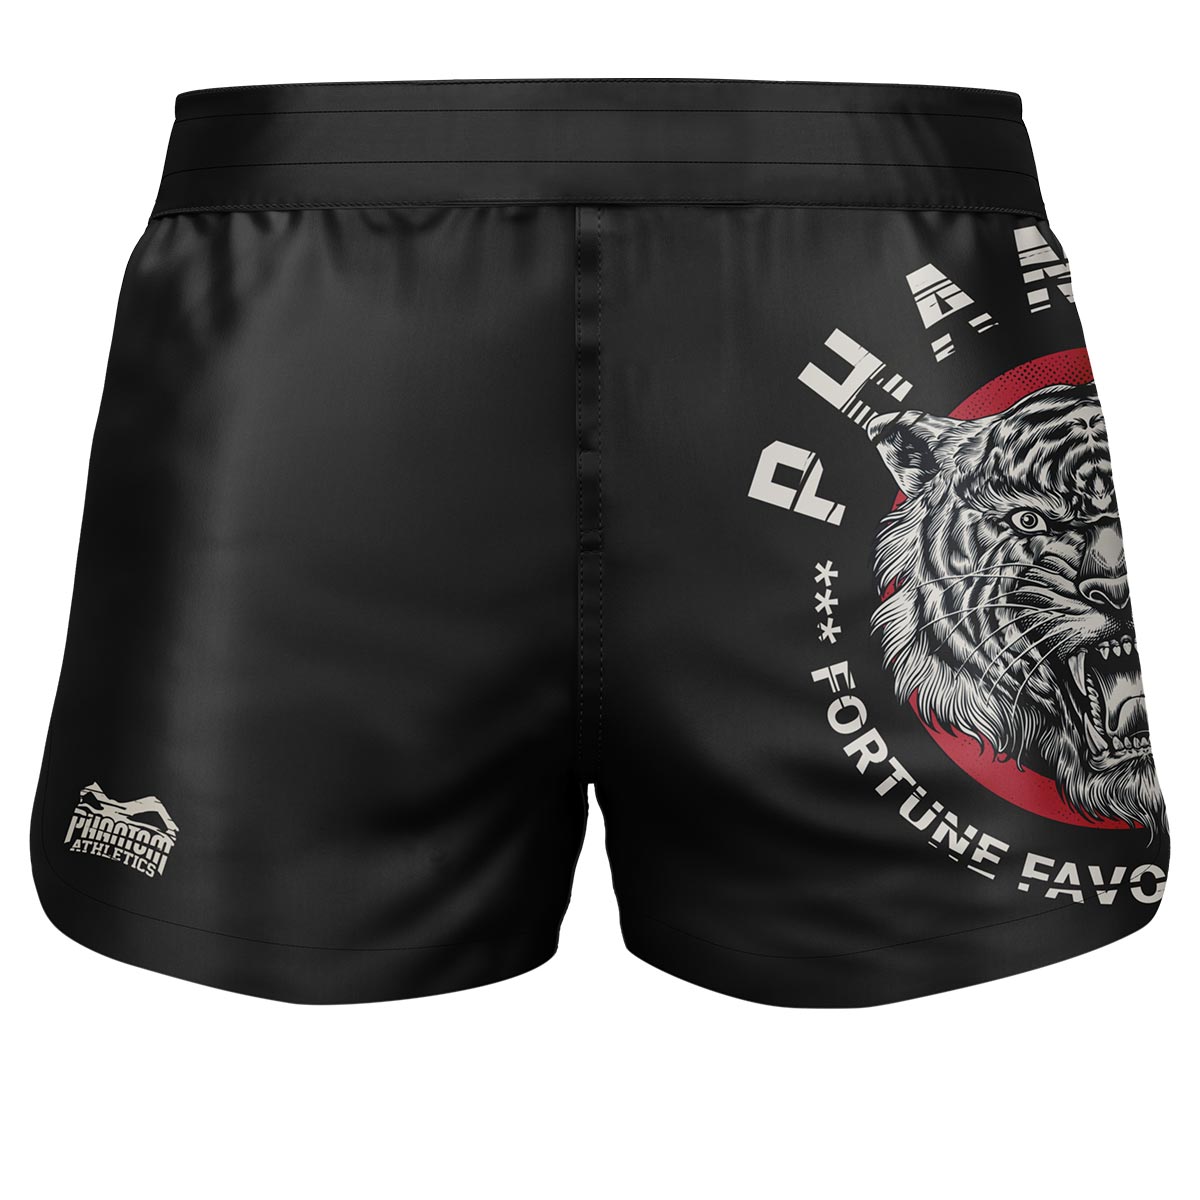 Phantom Fightshorts Fusión 2en1. Shorts definitivos para tus artes marciales. Ideal para MMA, Muay Thai, BJJ, lucha libre y más. En negro con nuestro popular diseño Tiger Unit.